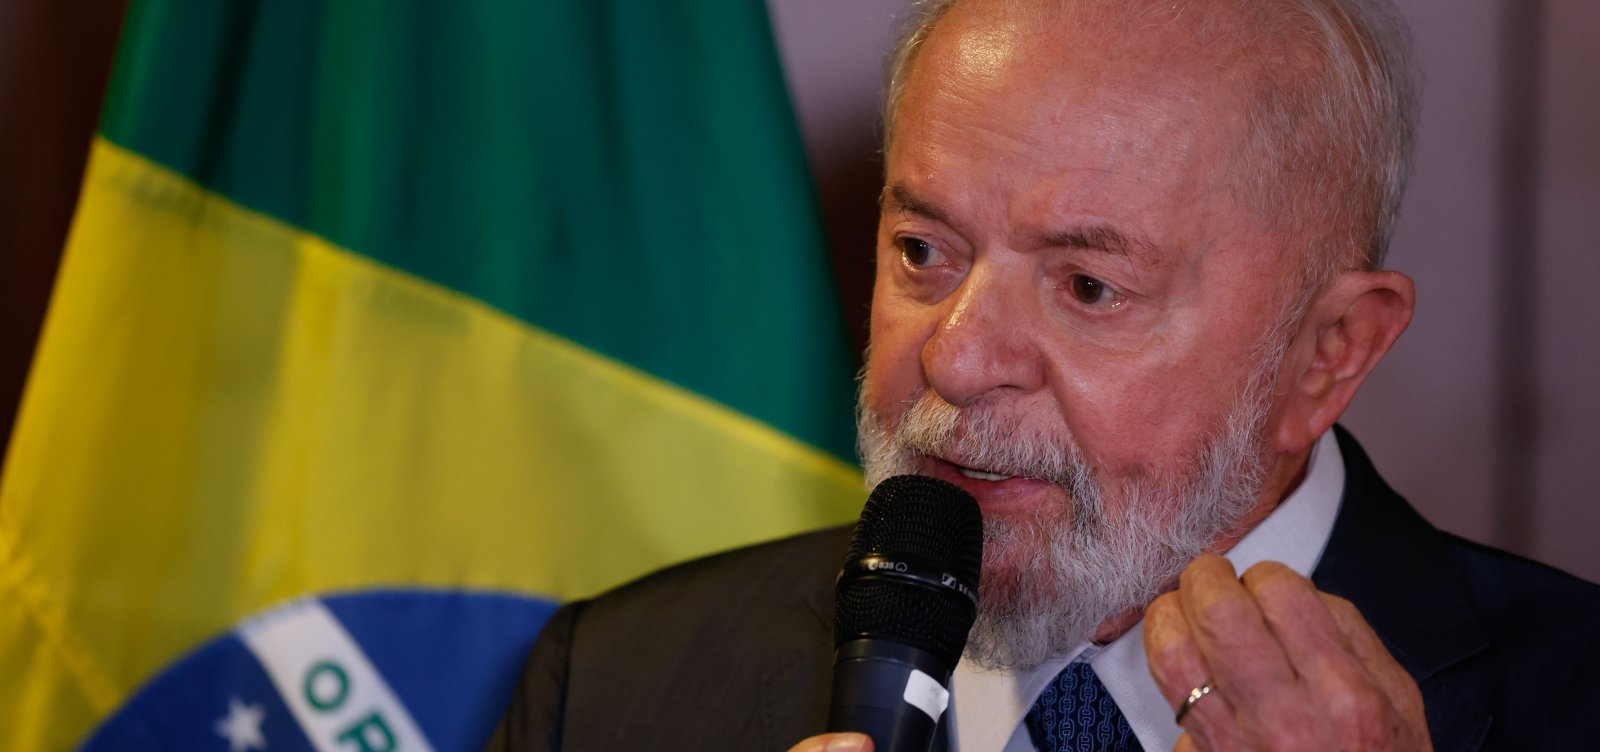 Lula critica decisão do Copom sobre taxa Selic: "Autonomia para atender quem?" 